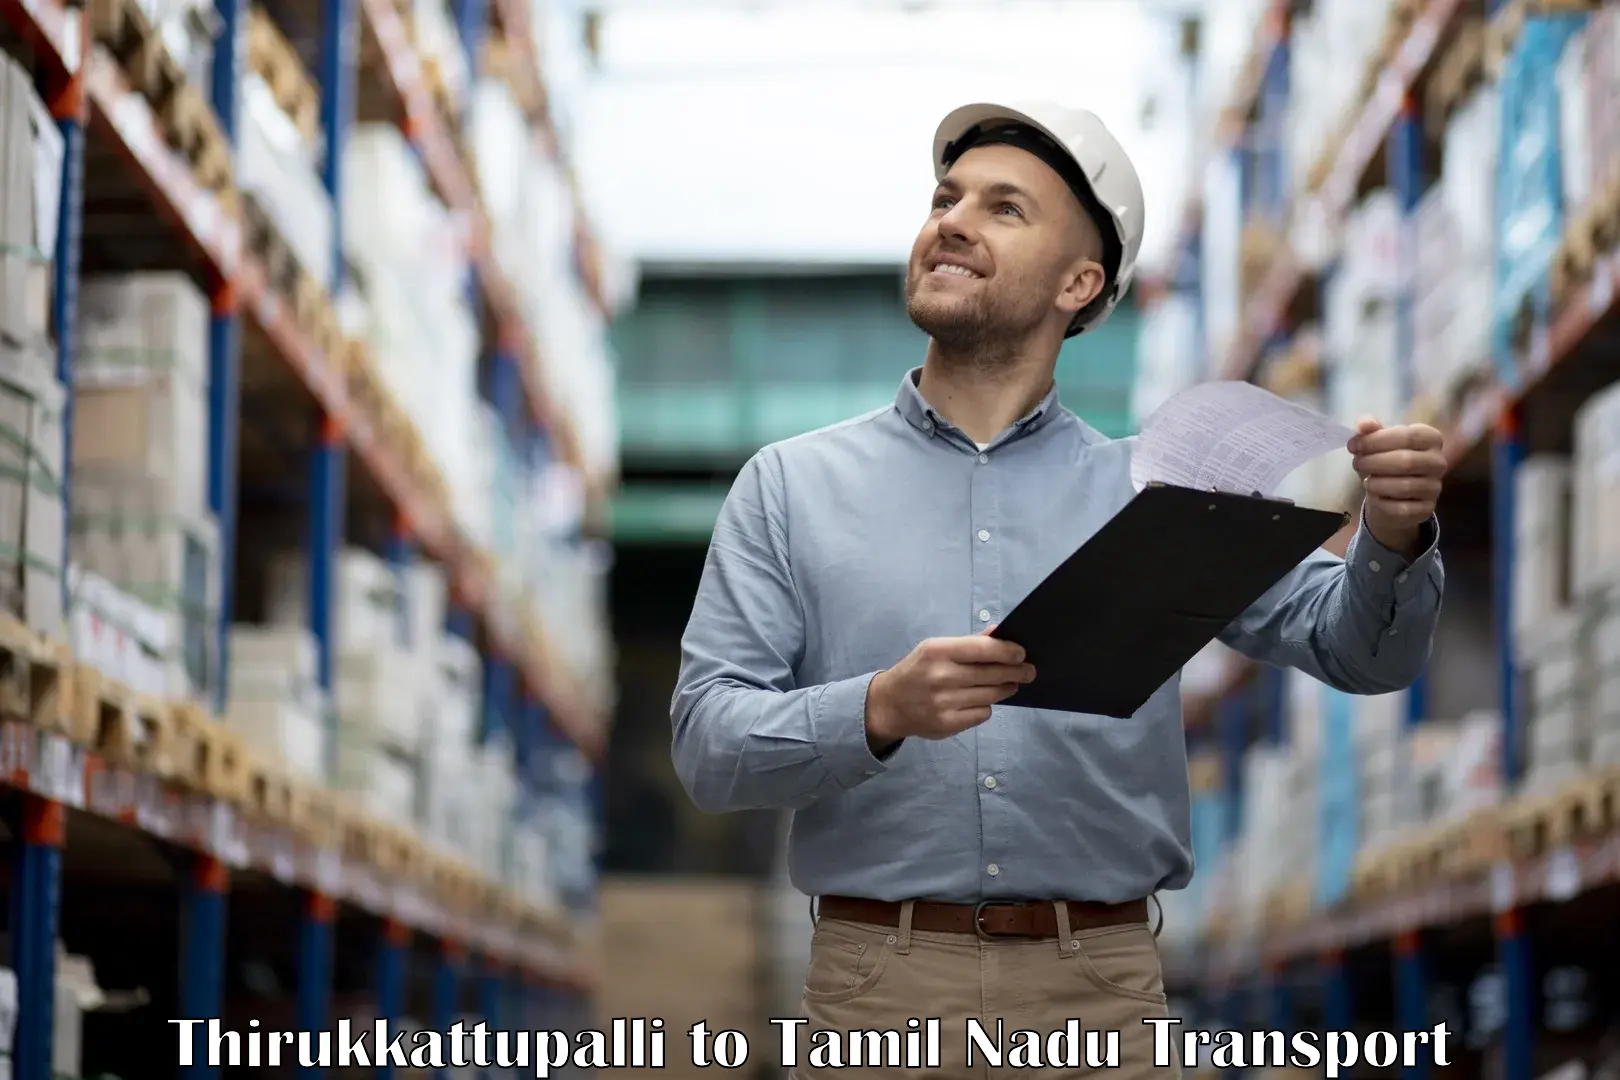 Logistics transportation services Thirukkattupalli to IIT Madras